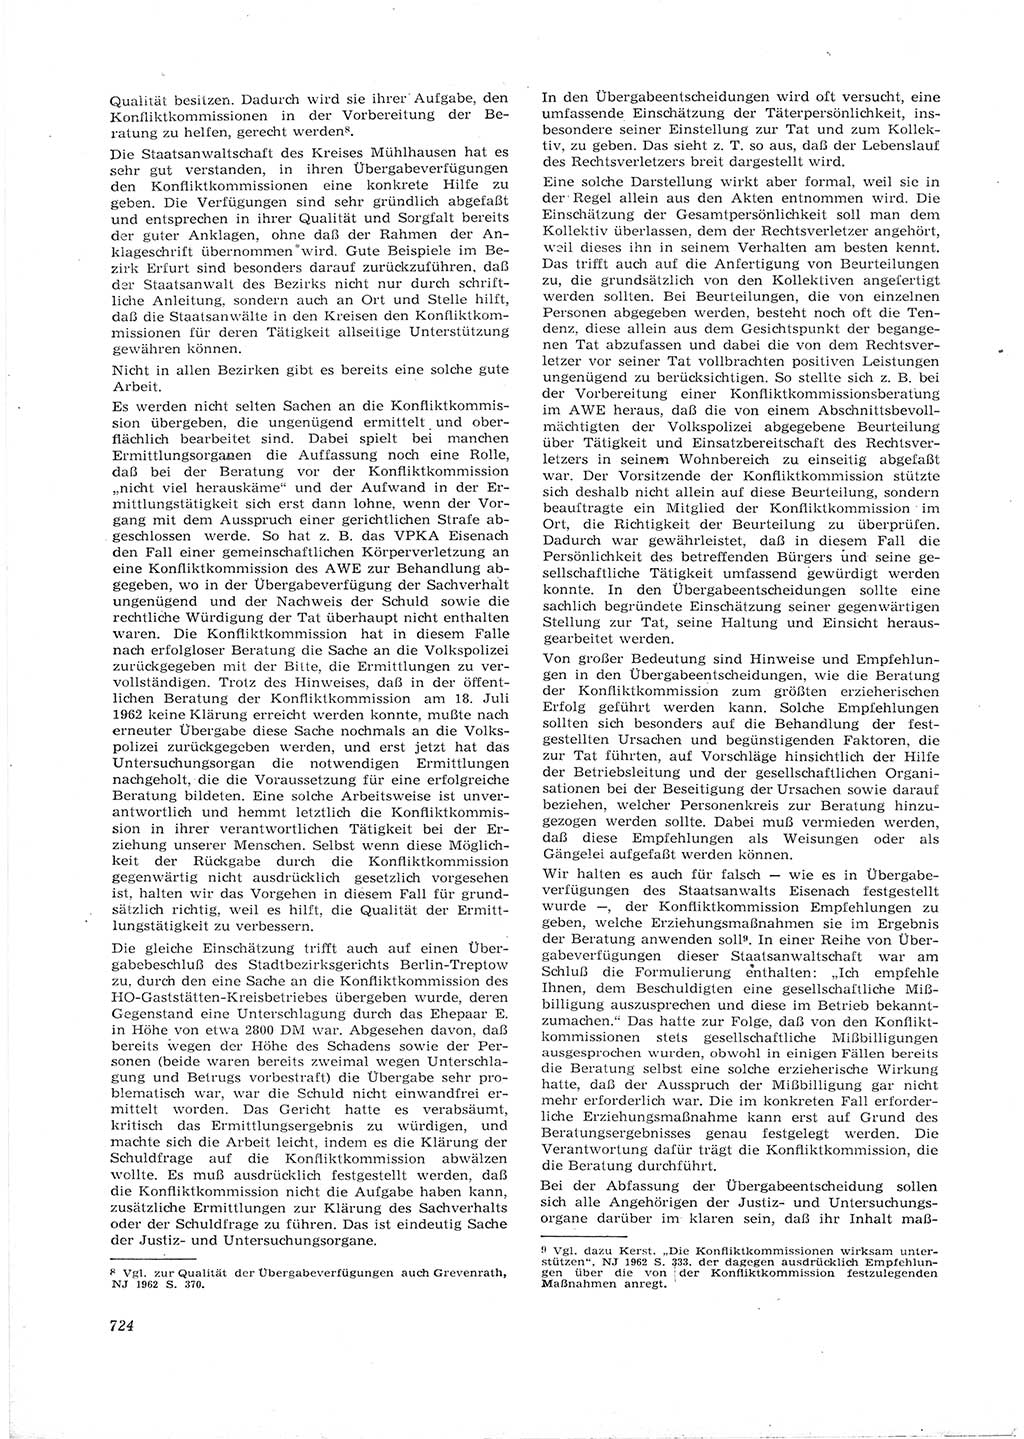 Neue Justiz (NJ), Zeitschrift für Recht und Rechtswissenschaft [Deutsche Demokratische Republik (DDR)], 16. Jahrgang 1962, Seite 724 (NJ DDR 1962, S. 724)